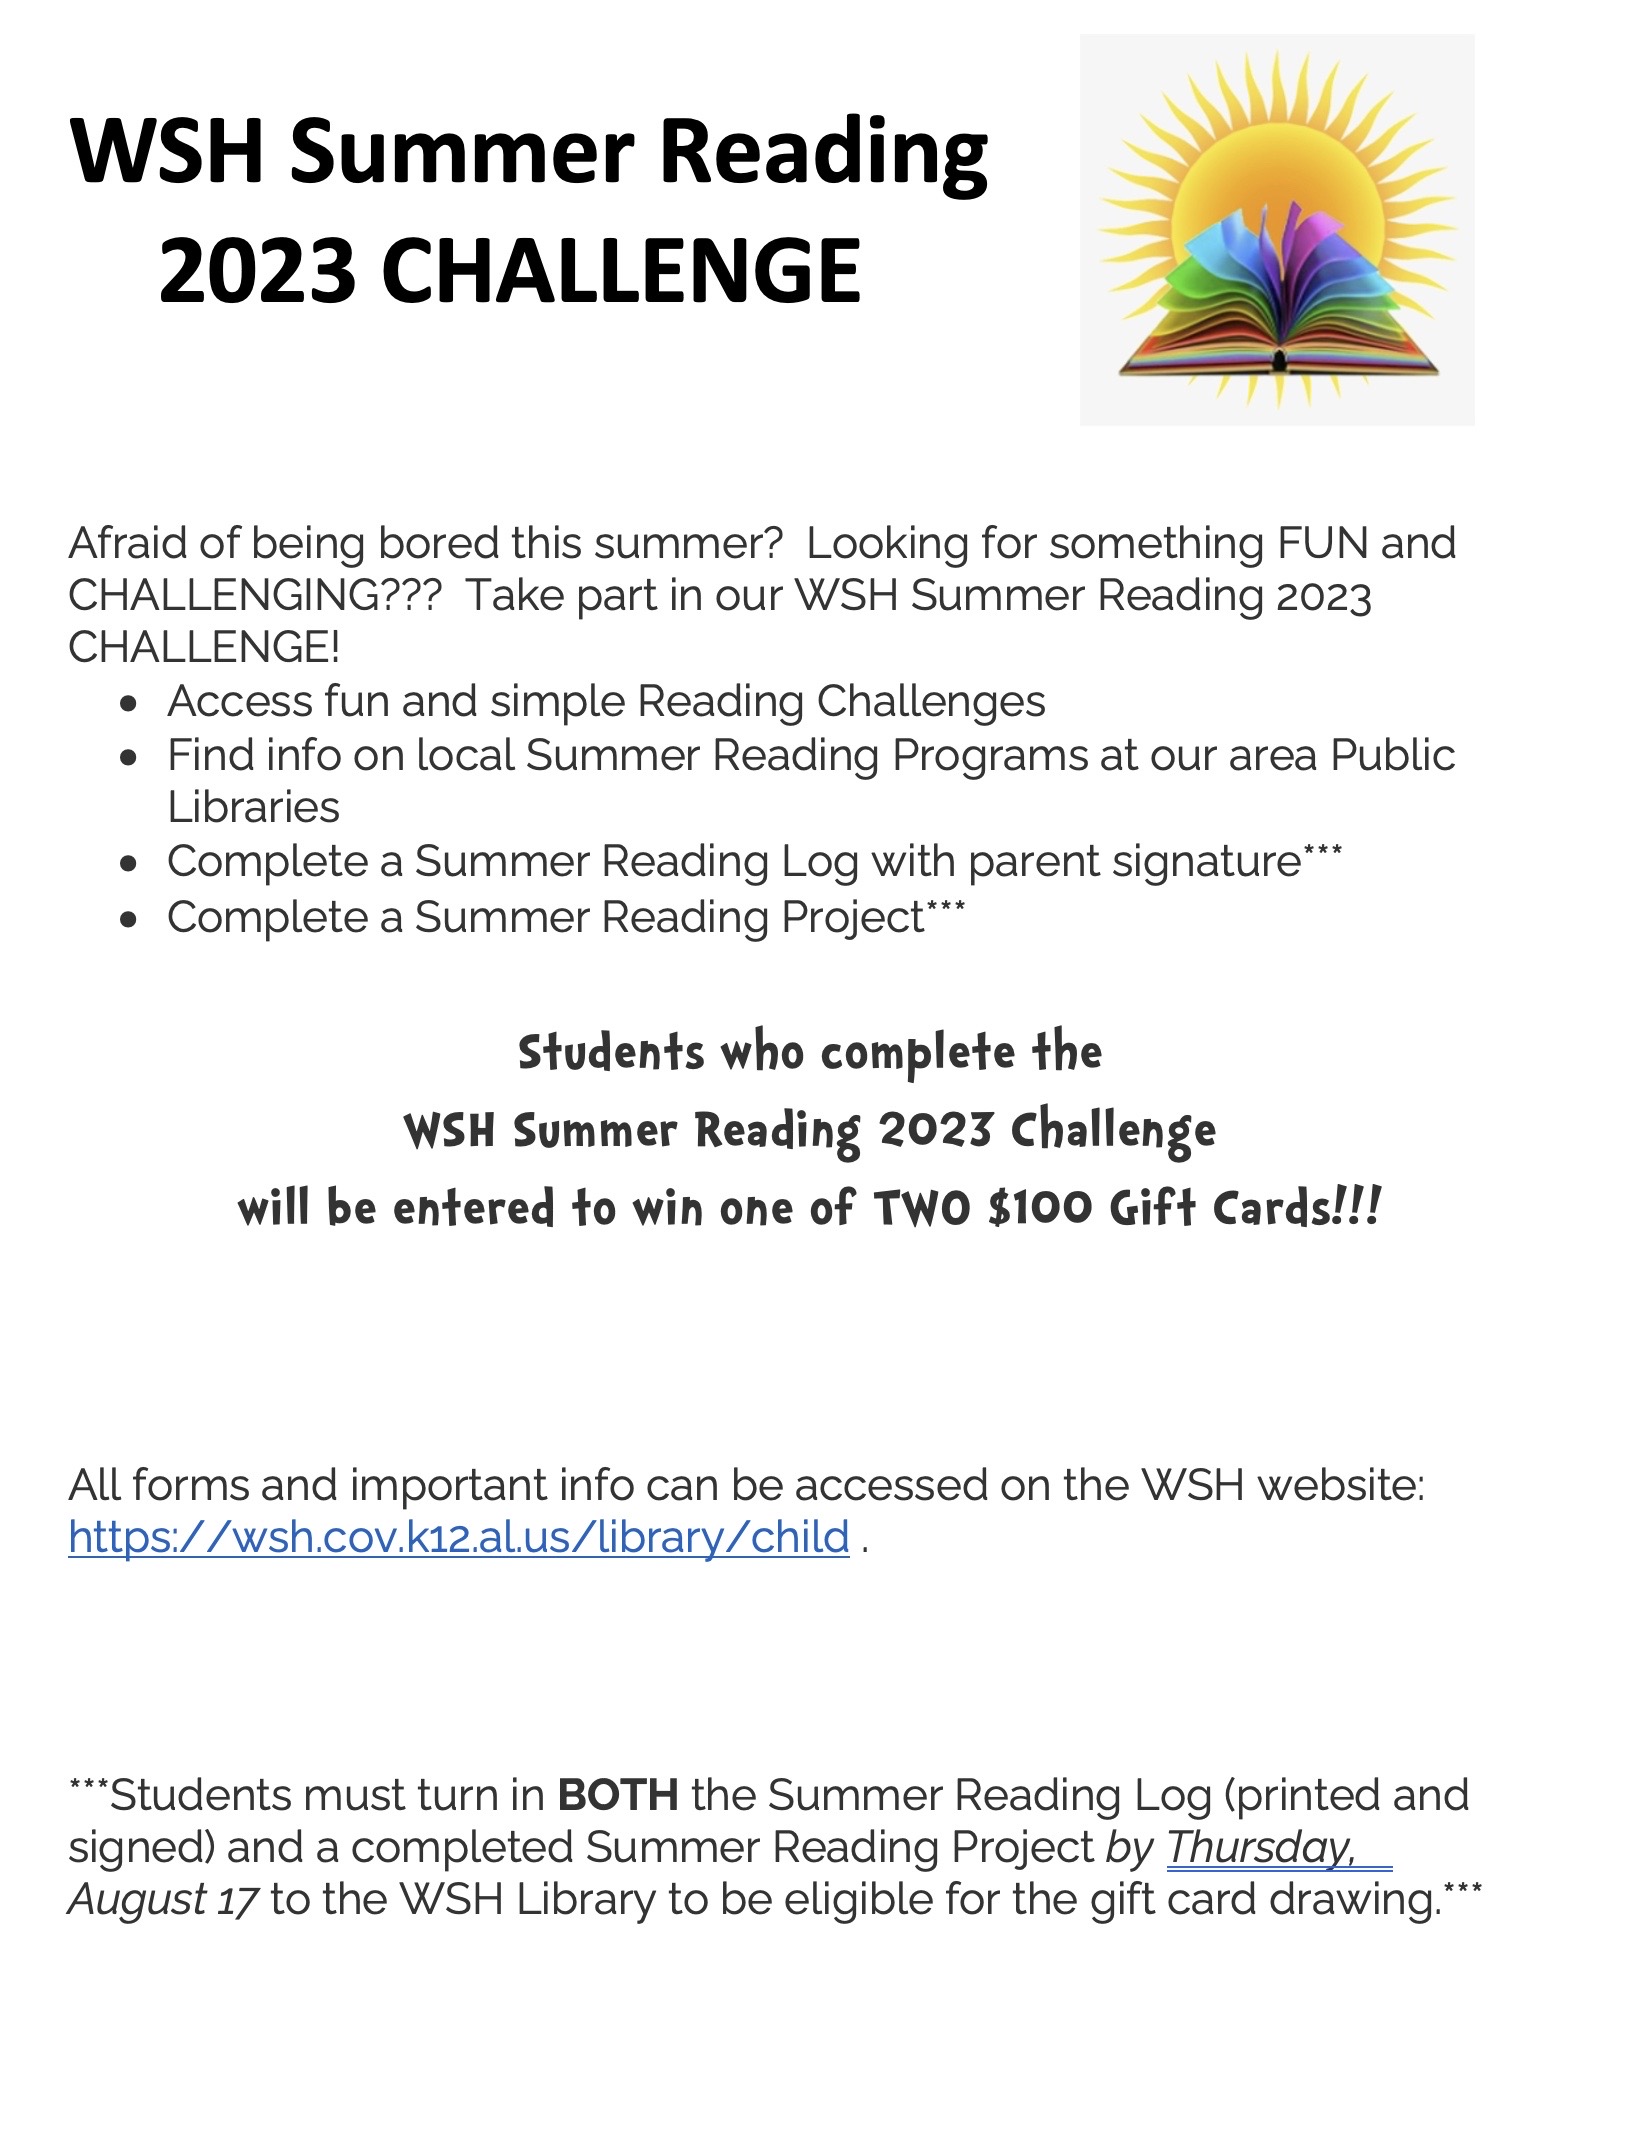 WSH Summer Reading 2023 Challenge